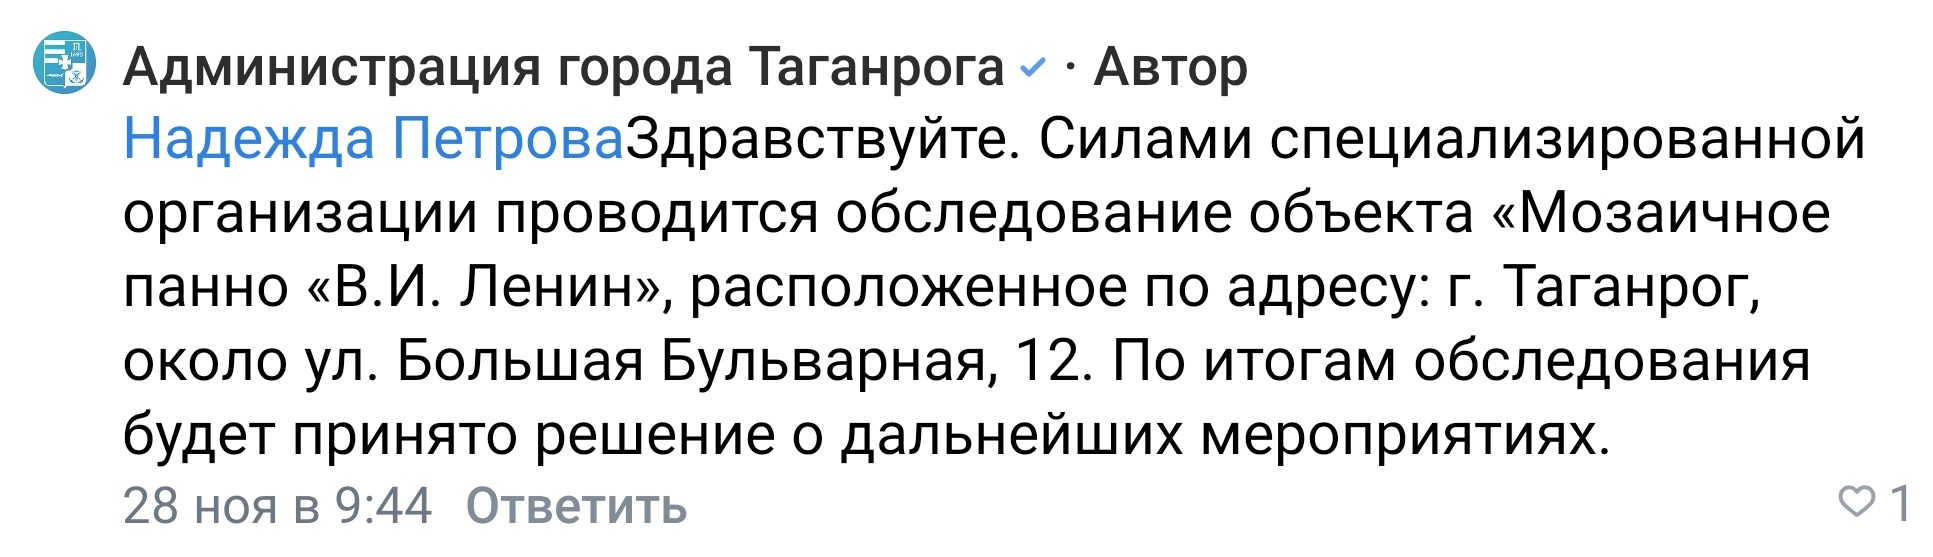 Ответ администрации Таганрога на озабоченность граждан судьбой упавшего панно